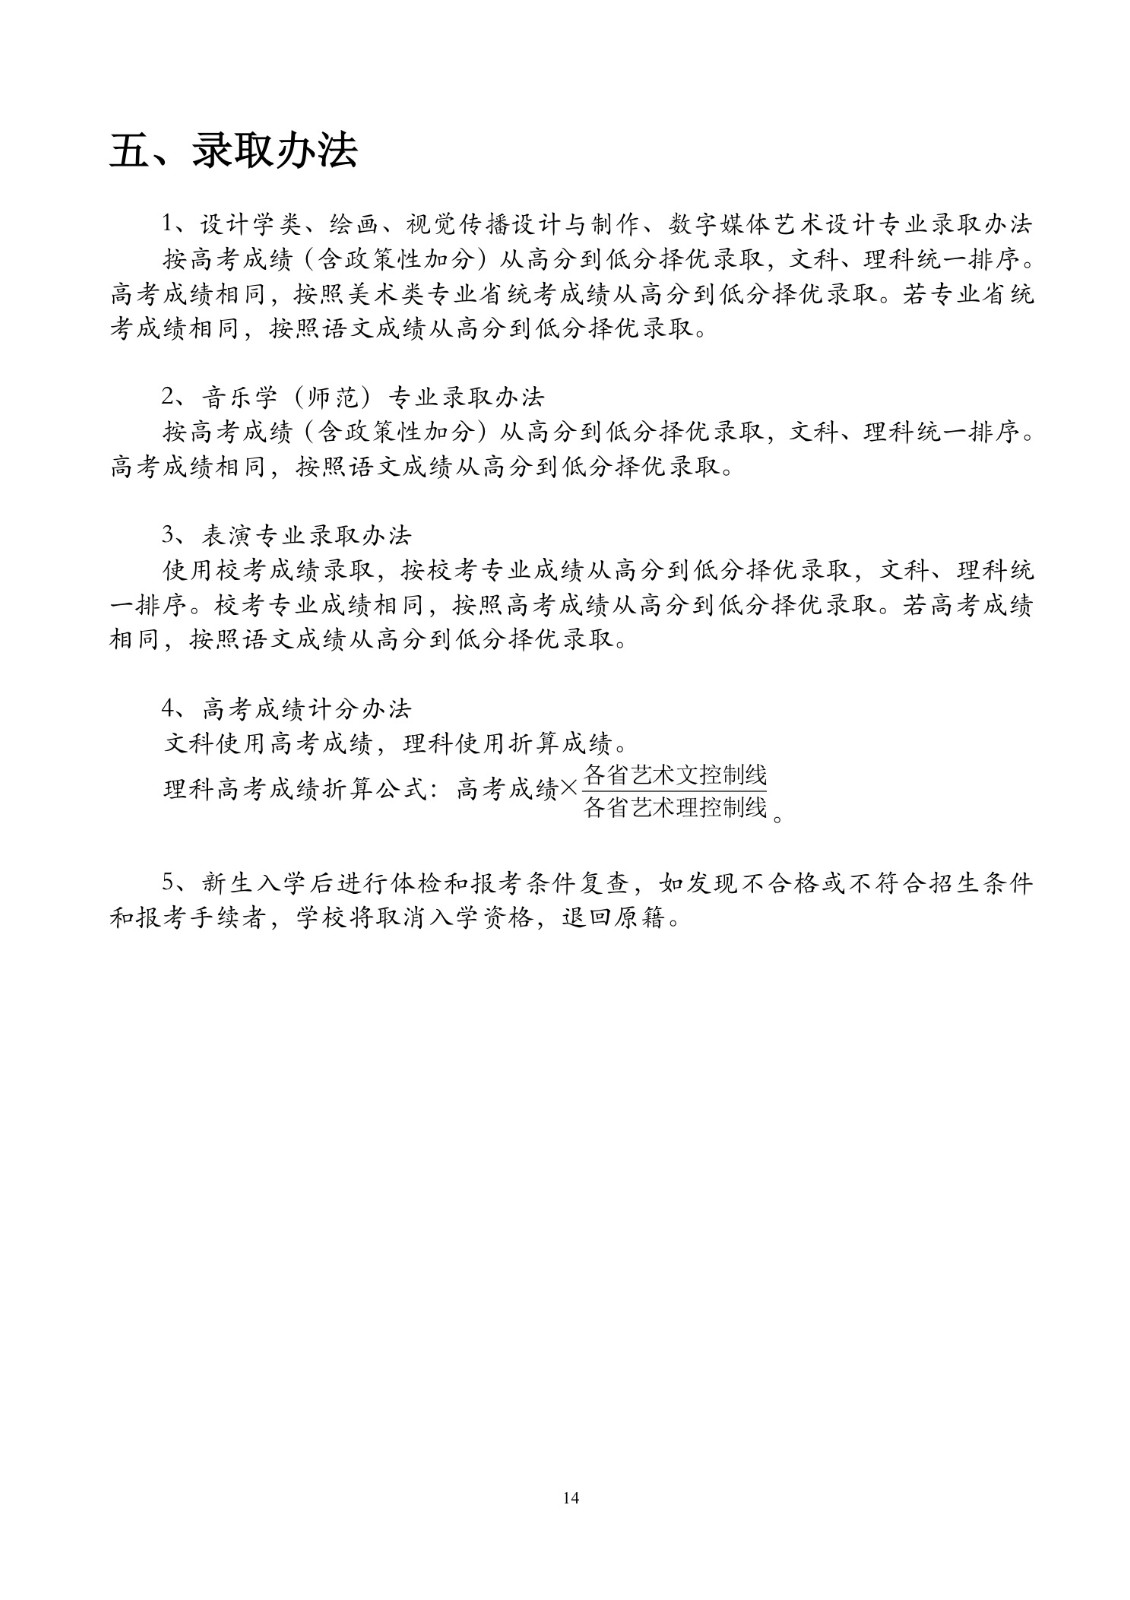 北京联合大学2018年艺术类招生简章20180103-page14 2.jpeg